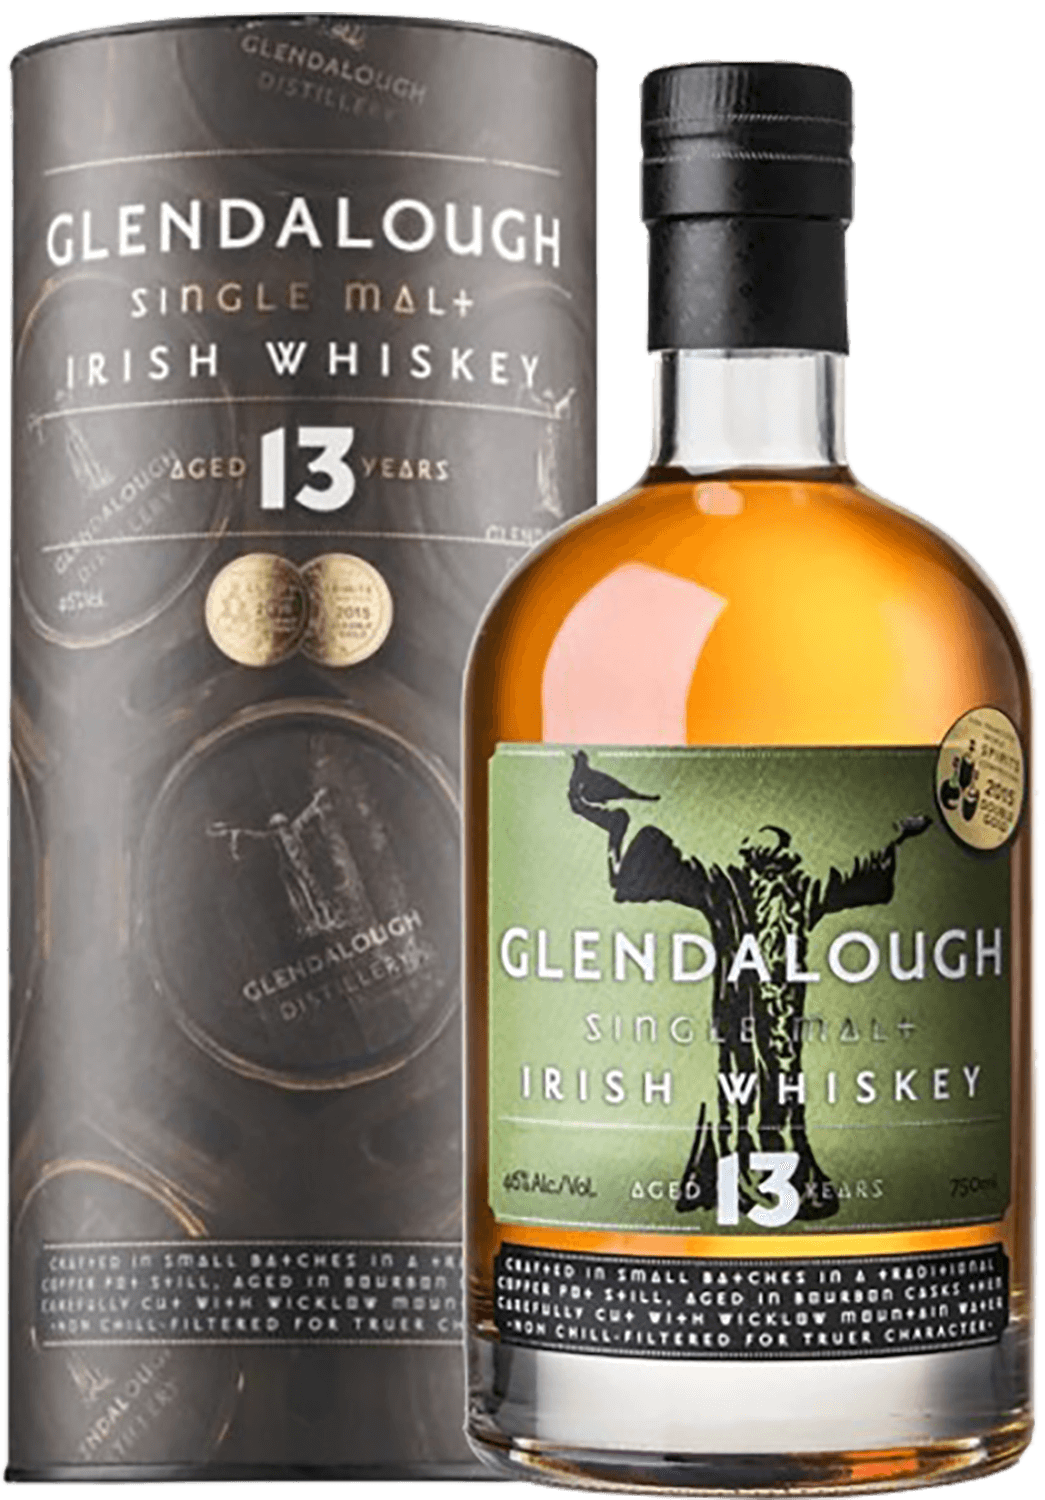 Glendalough 13 y.o. Single Malt Irish Whiskey (gift box) west cork small batch calvados cask finished single malt irish whiskey